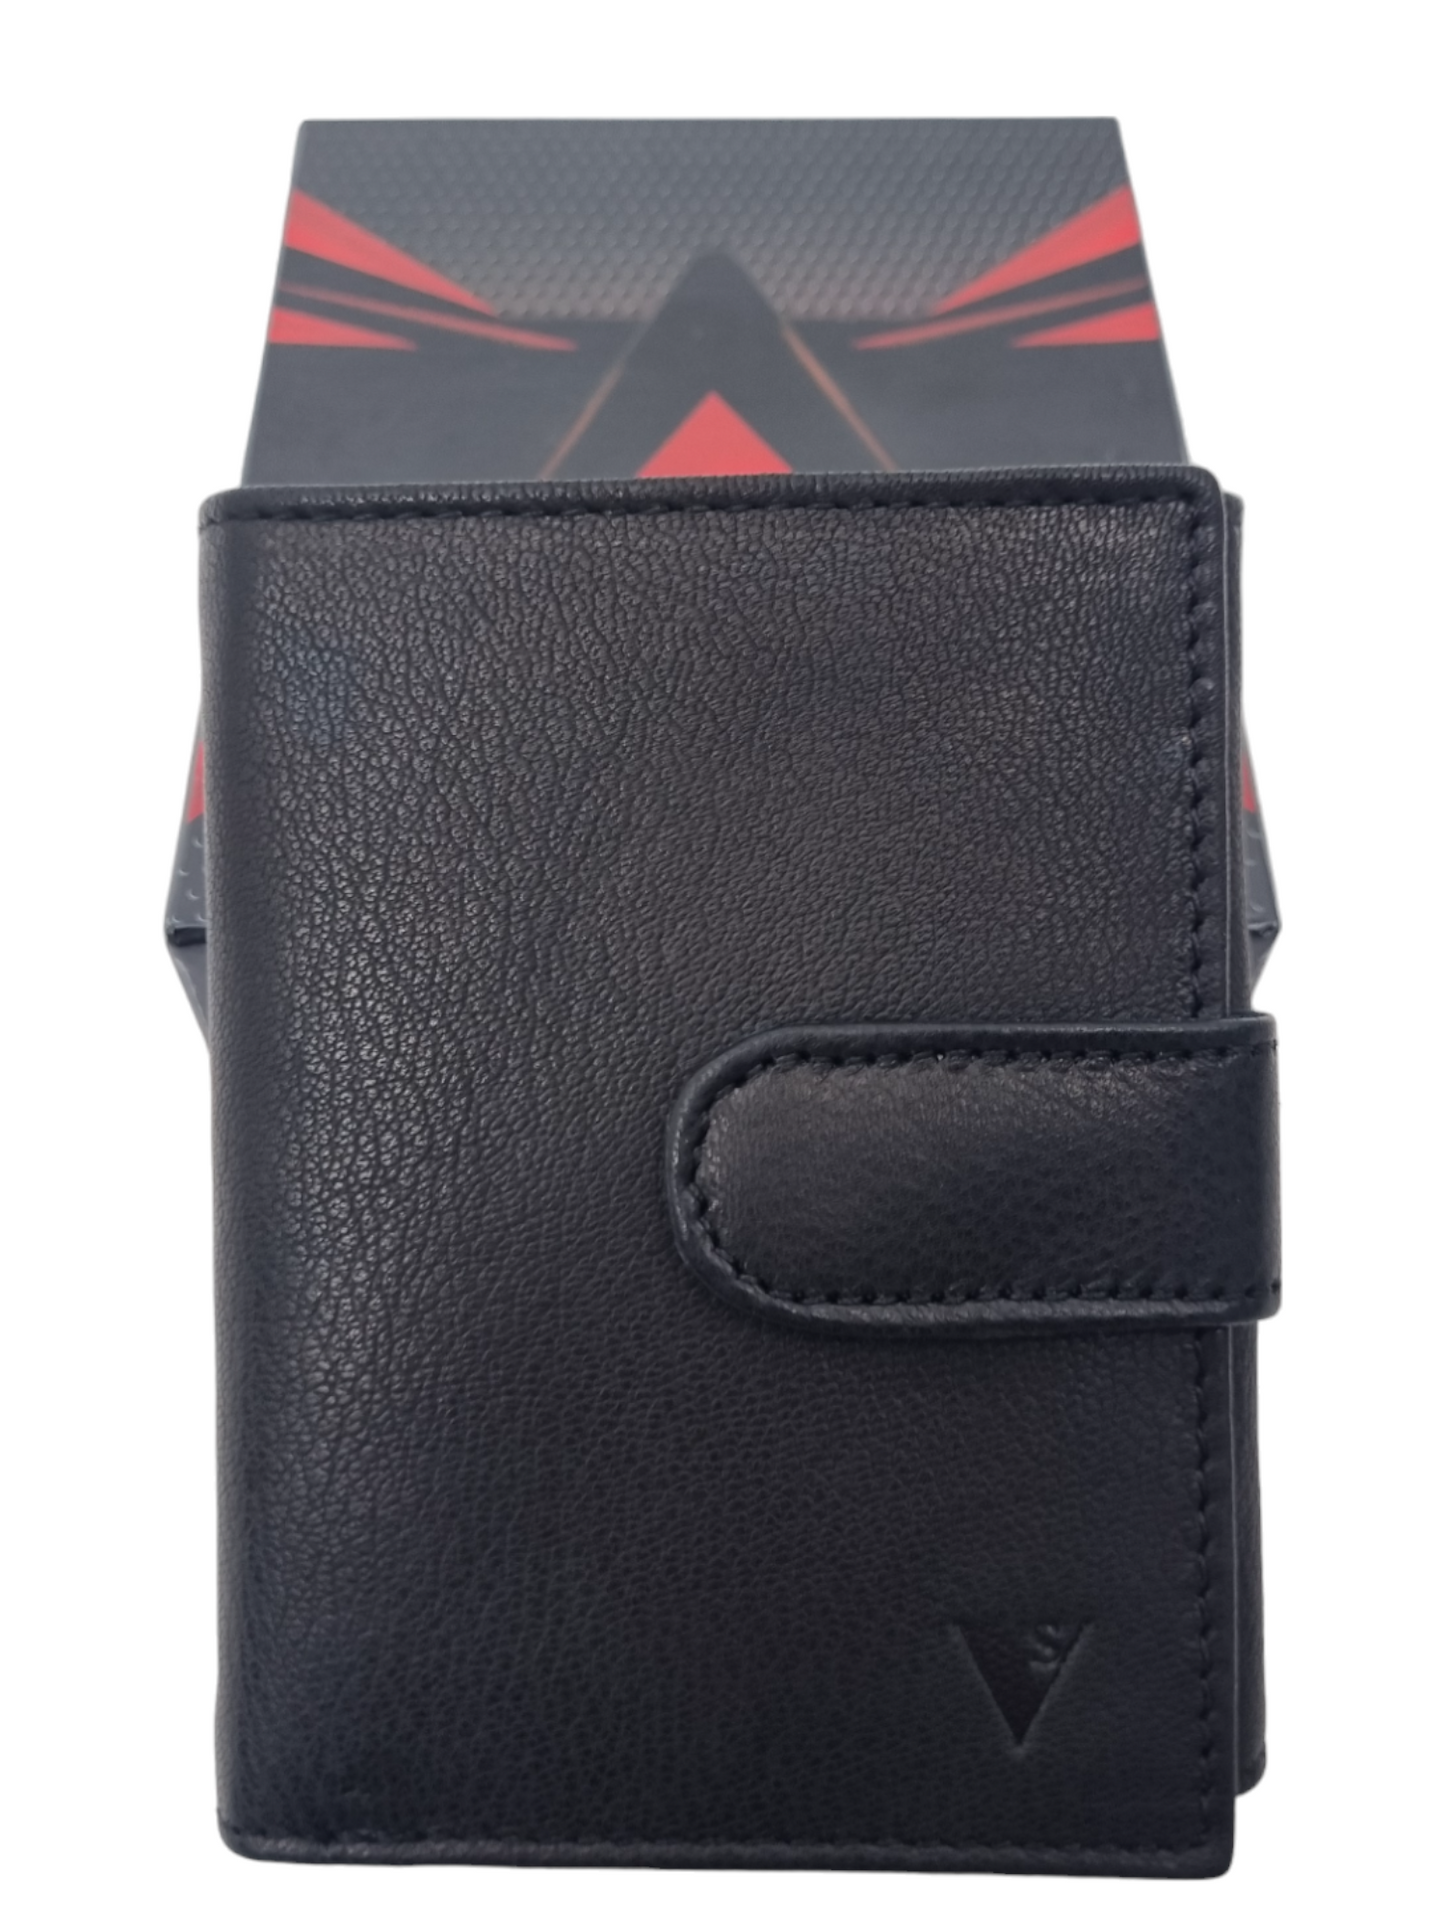 Pasjeshouder leer - Zwart - Portemonnee zwart - Portefeuille - Unisex